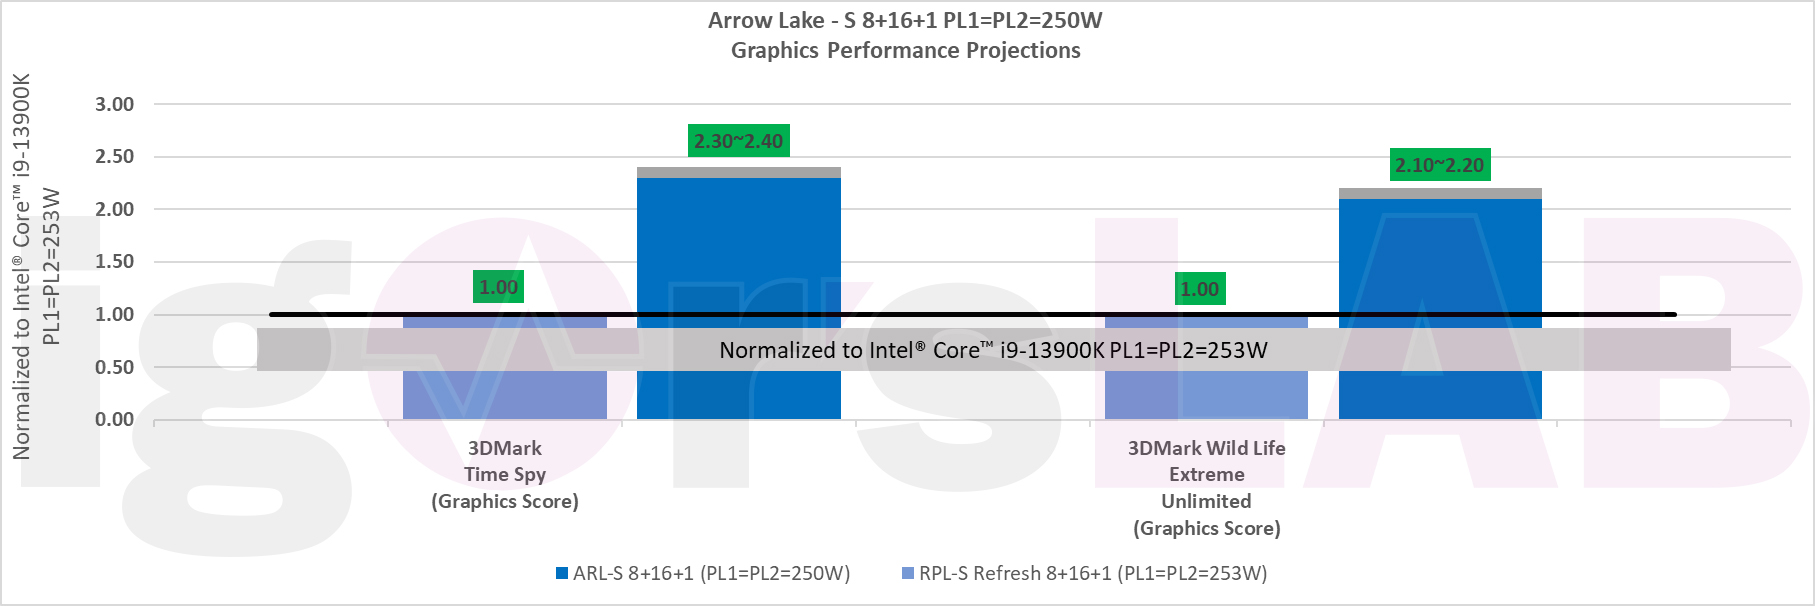 Slide de projeções de desempenho da iGPU de 14ª e 15ª geração da Intel